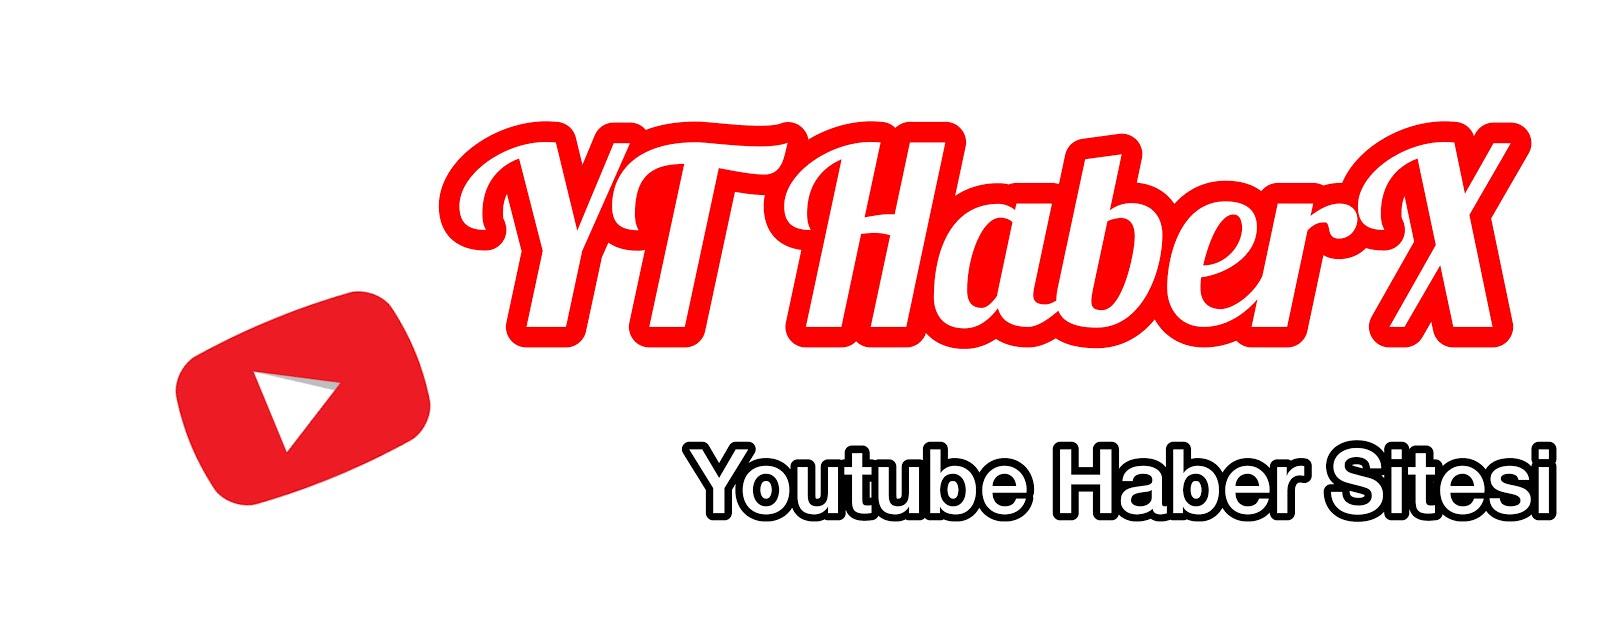 Youtube Haberx